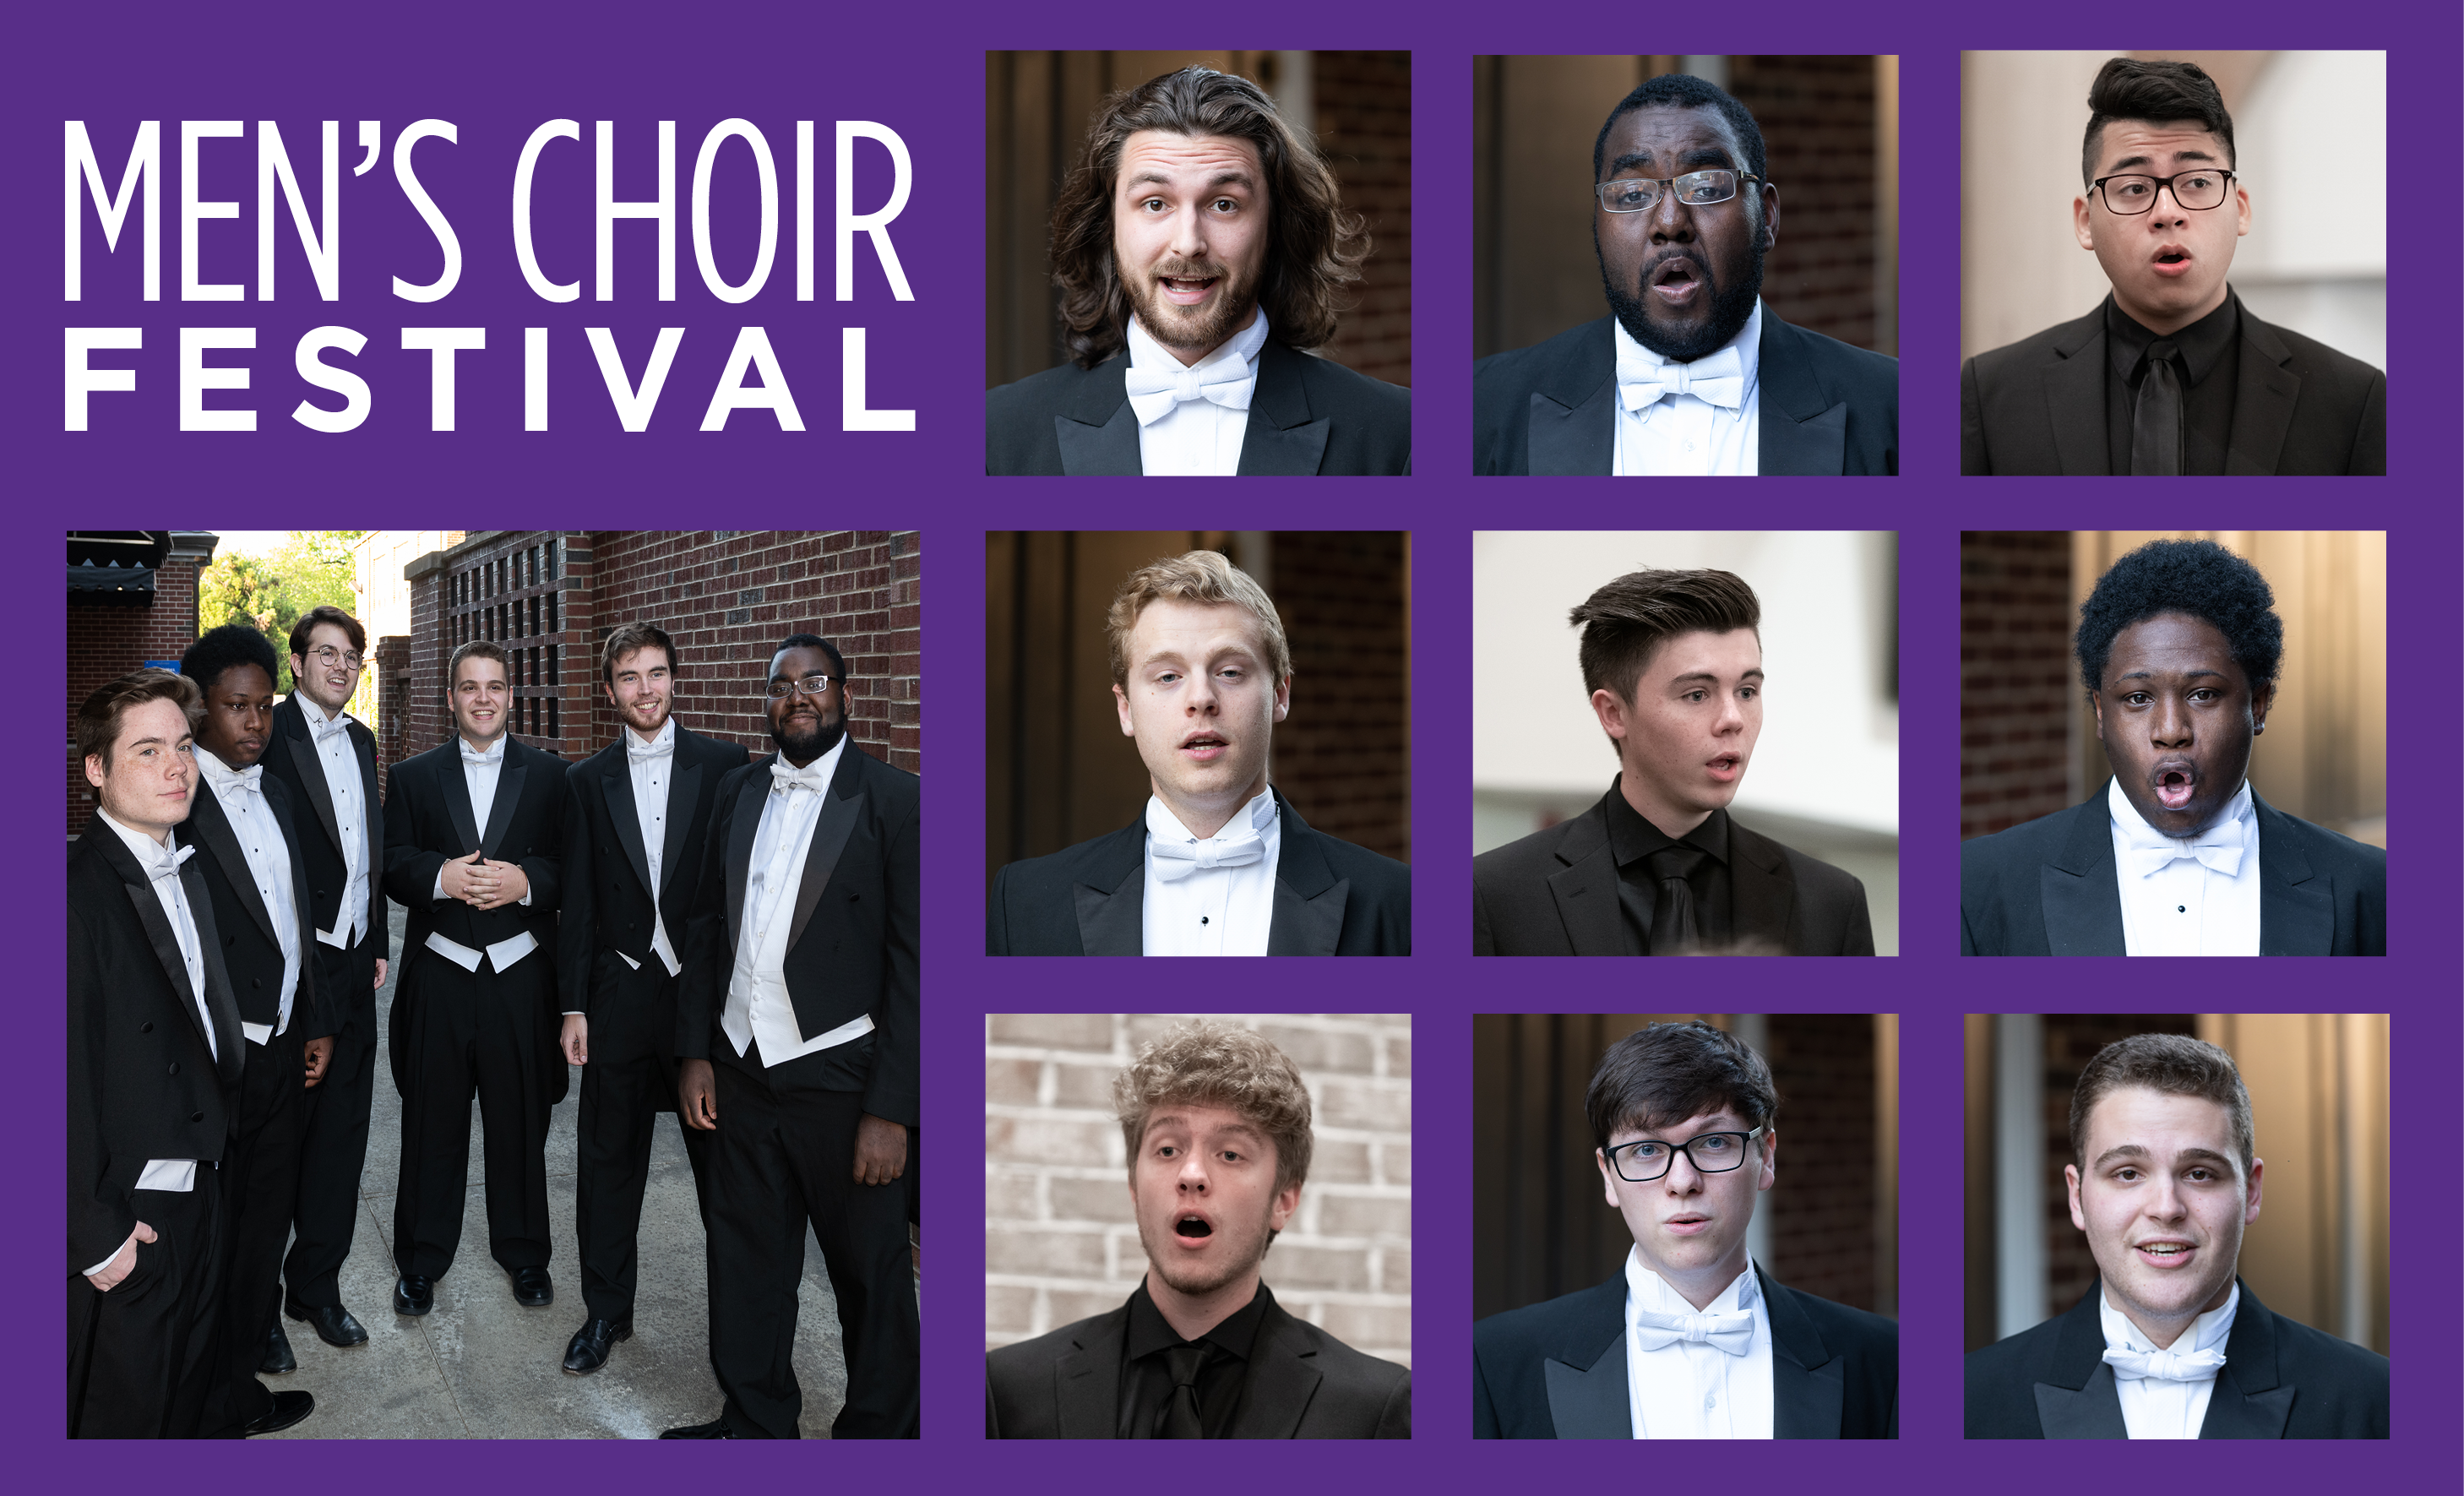 Image collage of the Men's Choir Festival particpants